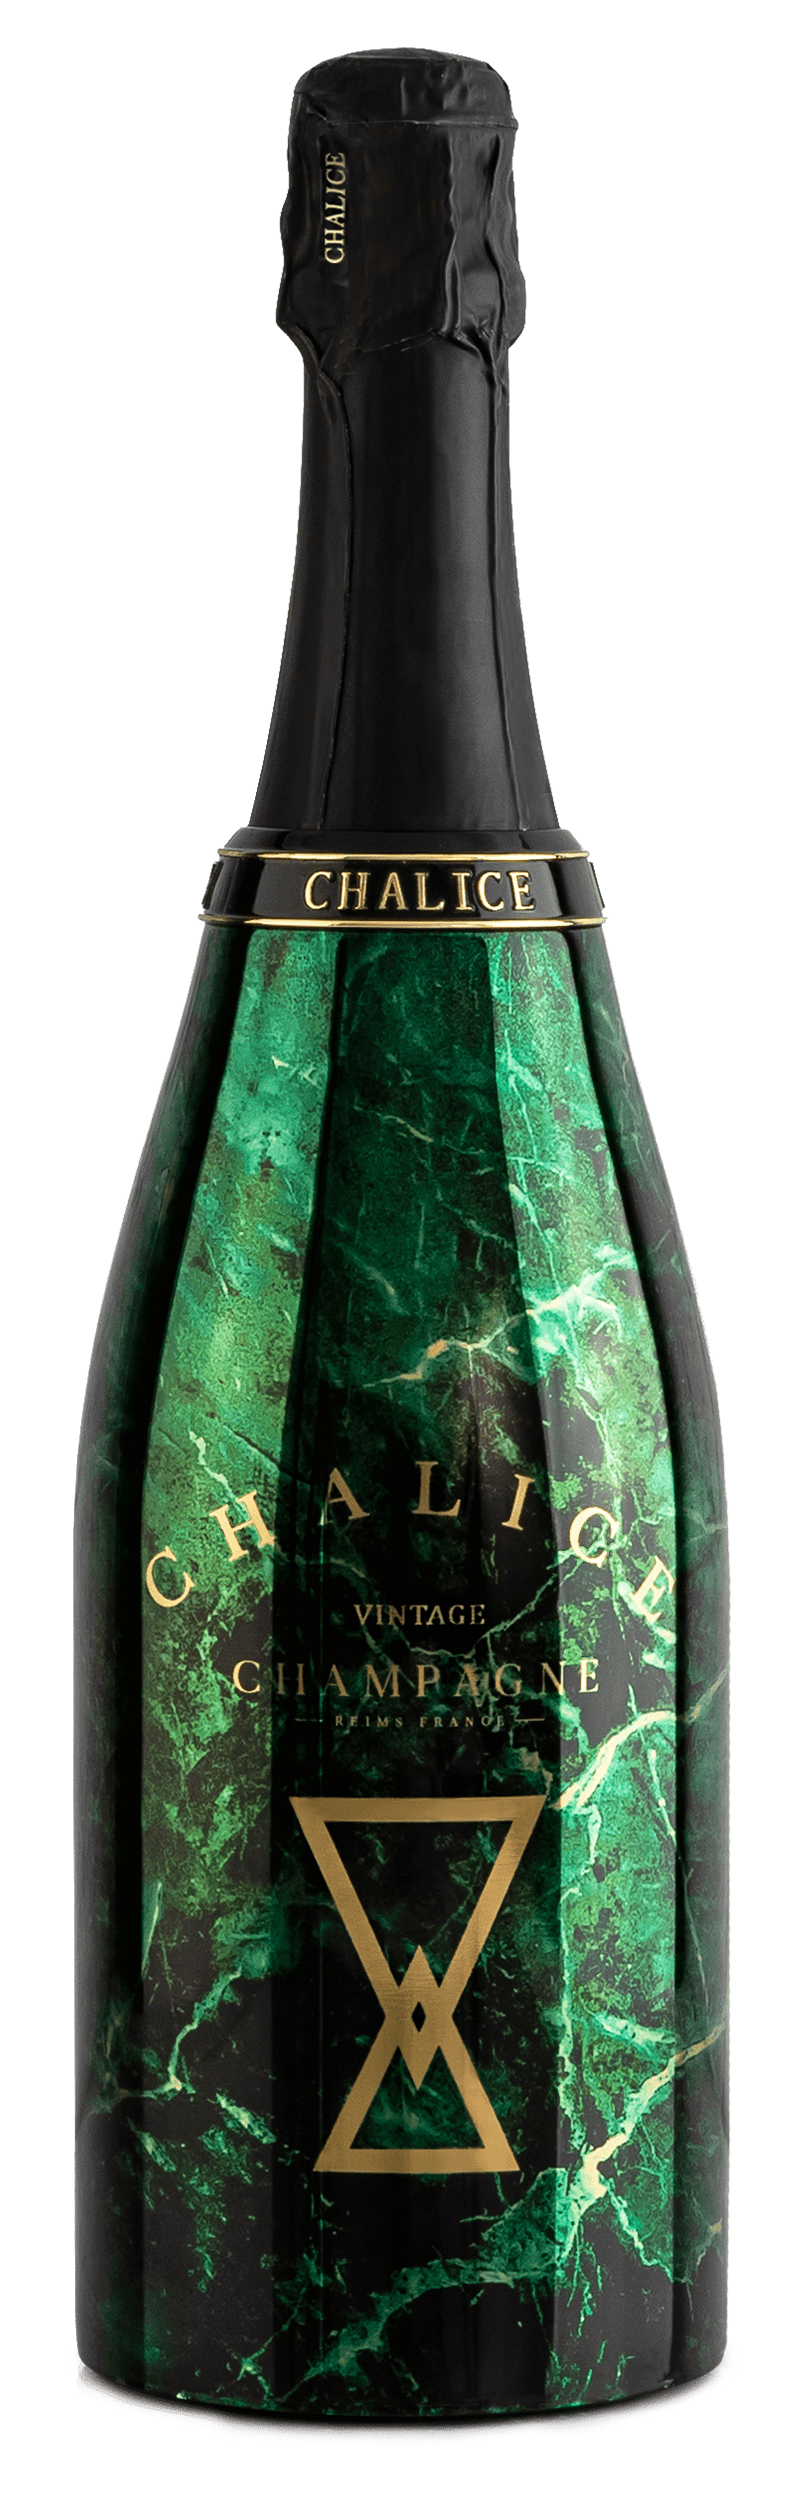 Chalice Green bottle - Vintage